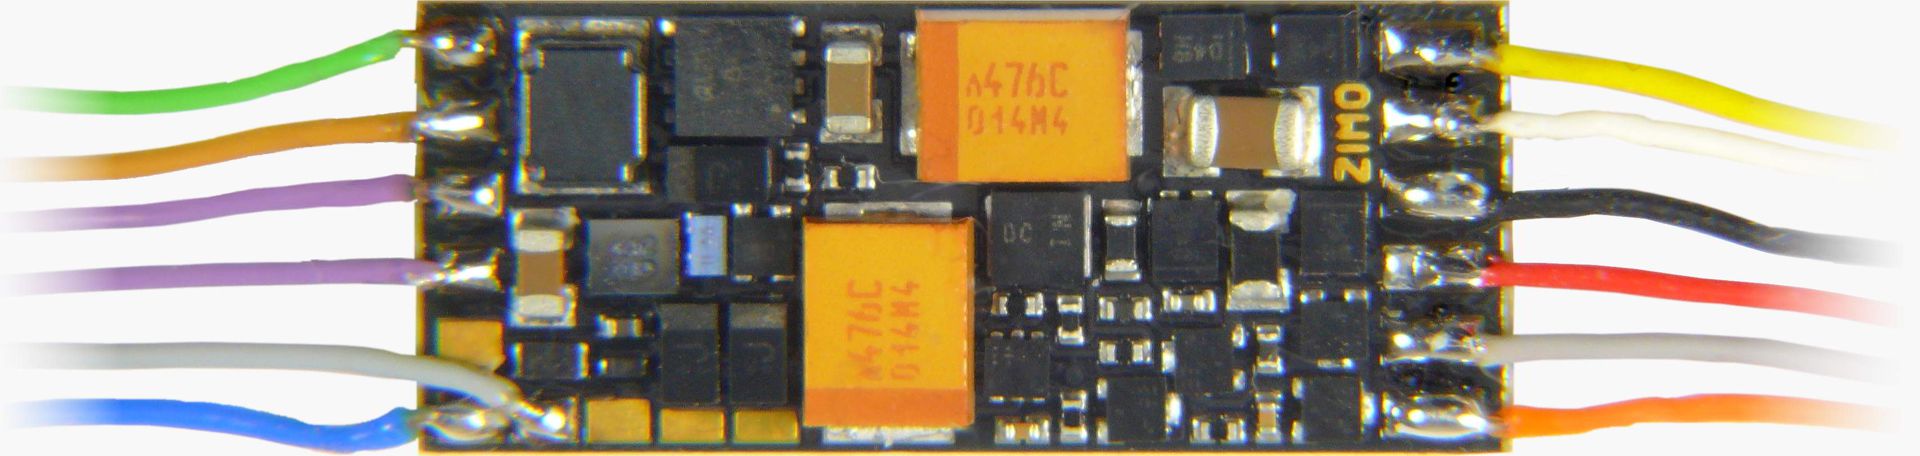 Zimo MS491F - Sounddecoder, NEM 651 an Drähten, 19 x 7,8 x 2,8 mm, 0,7 A